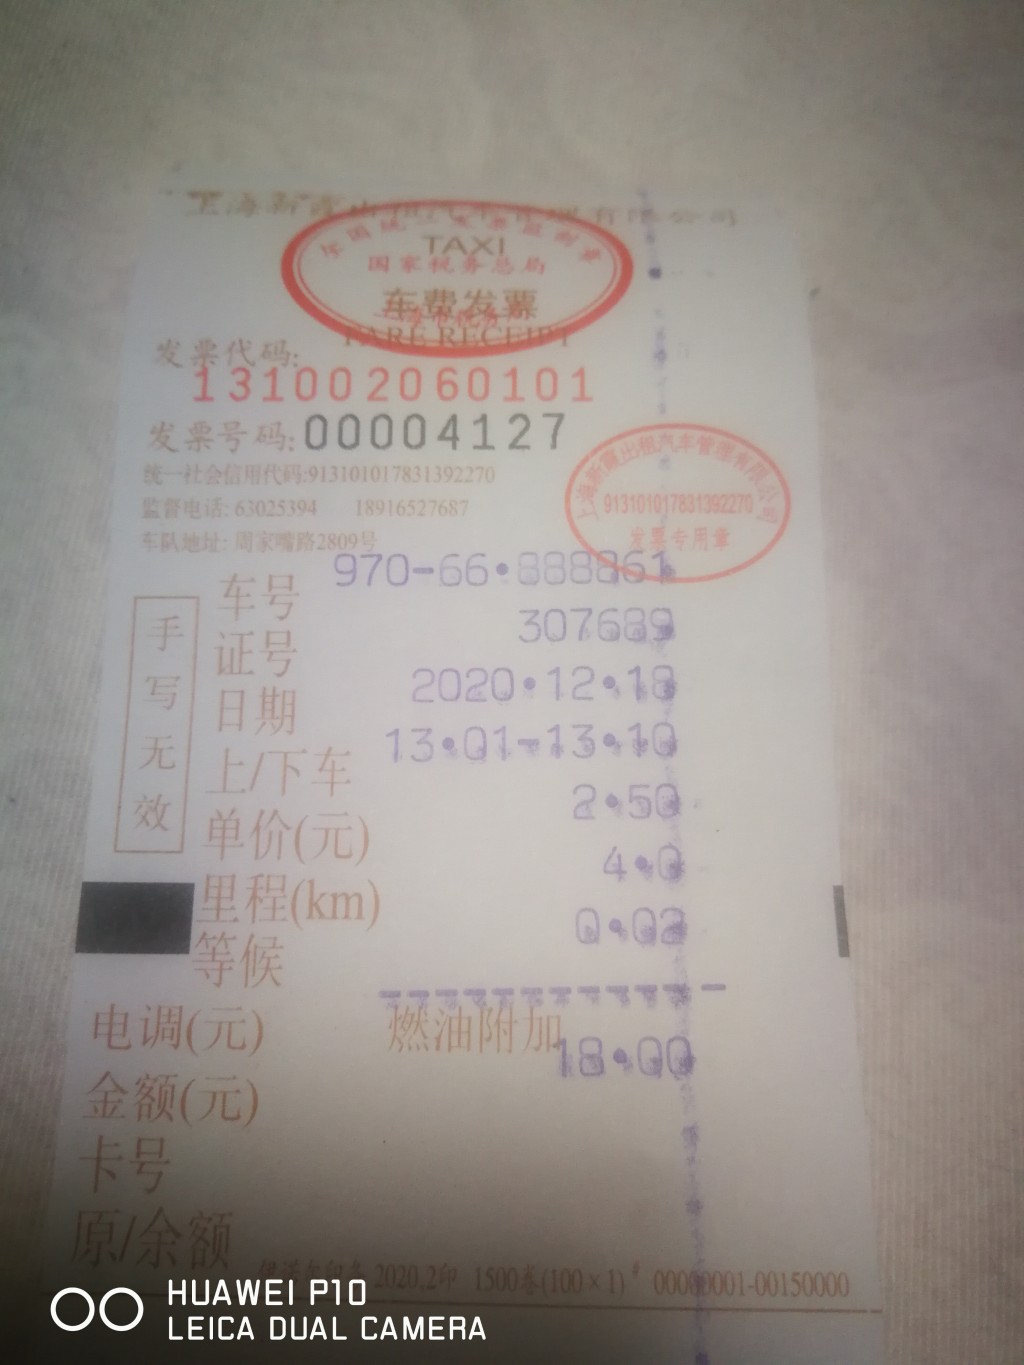 上海出租车发票 车号不对 纸宽比其他宽 印刷字体偏大